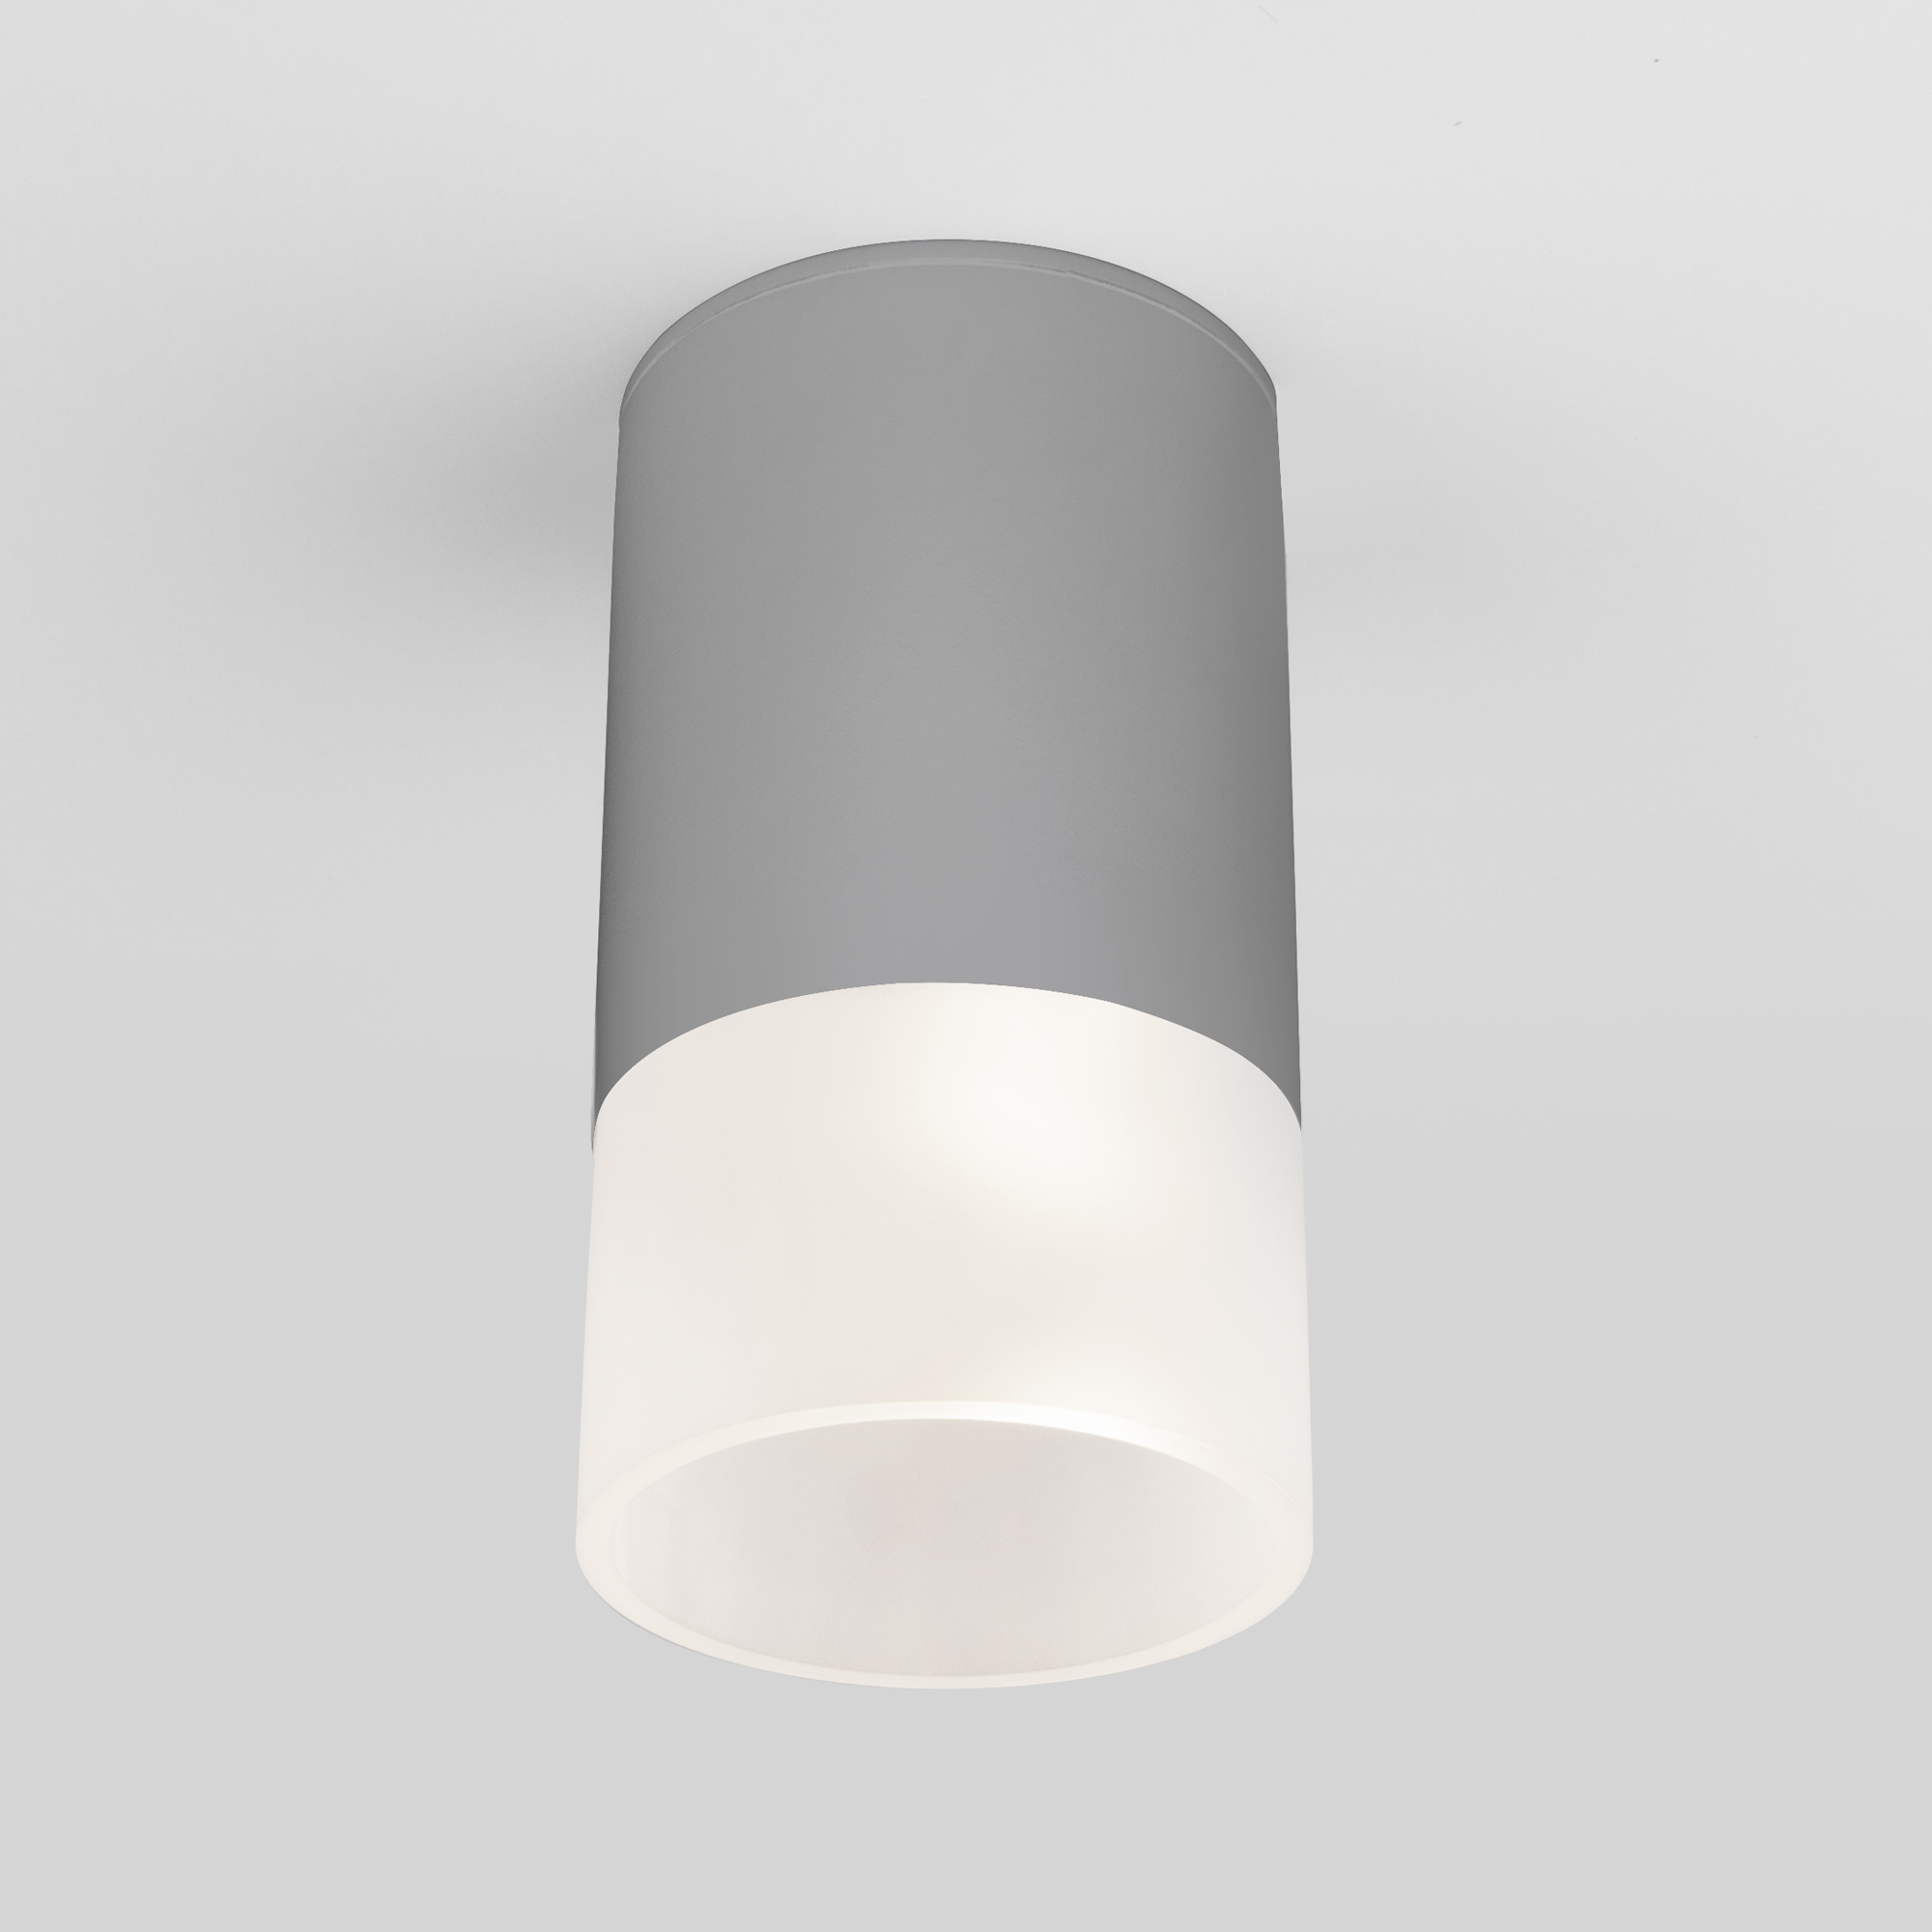 Уличный потолочный светильник Light LED 2106 IP54 35139/H серый 4690389177934